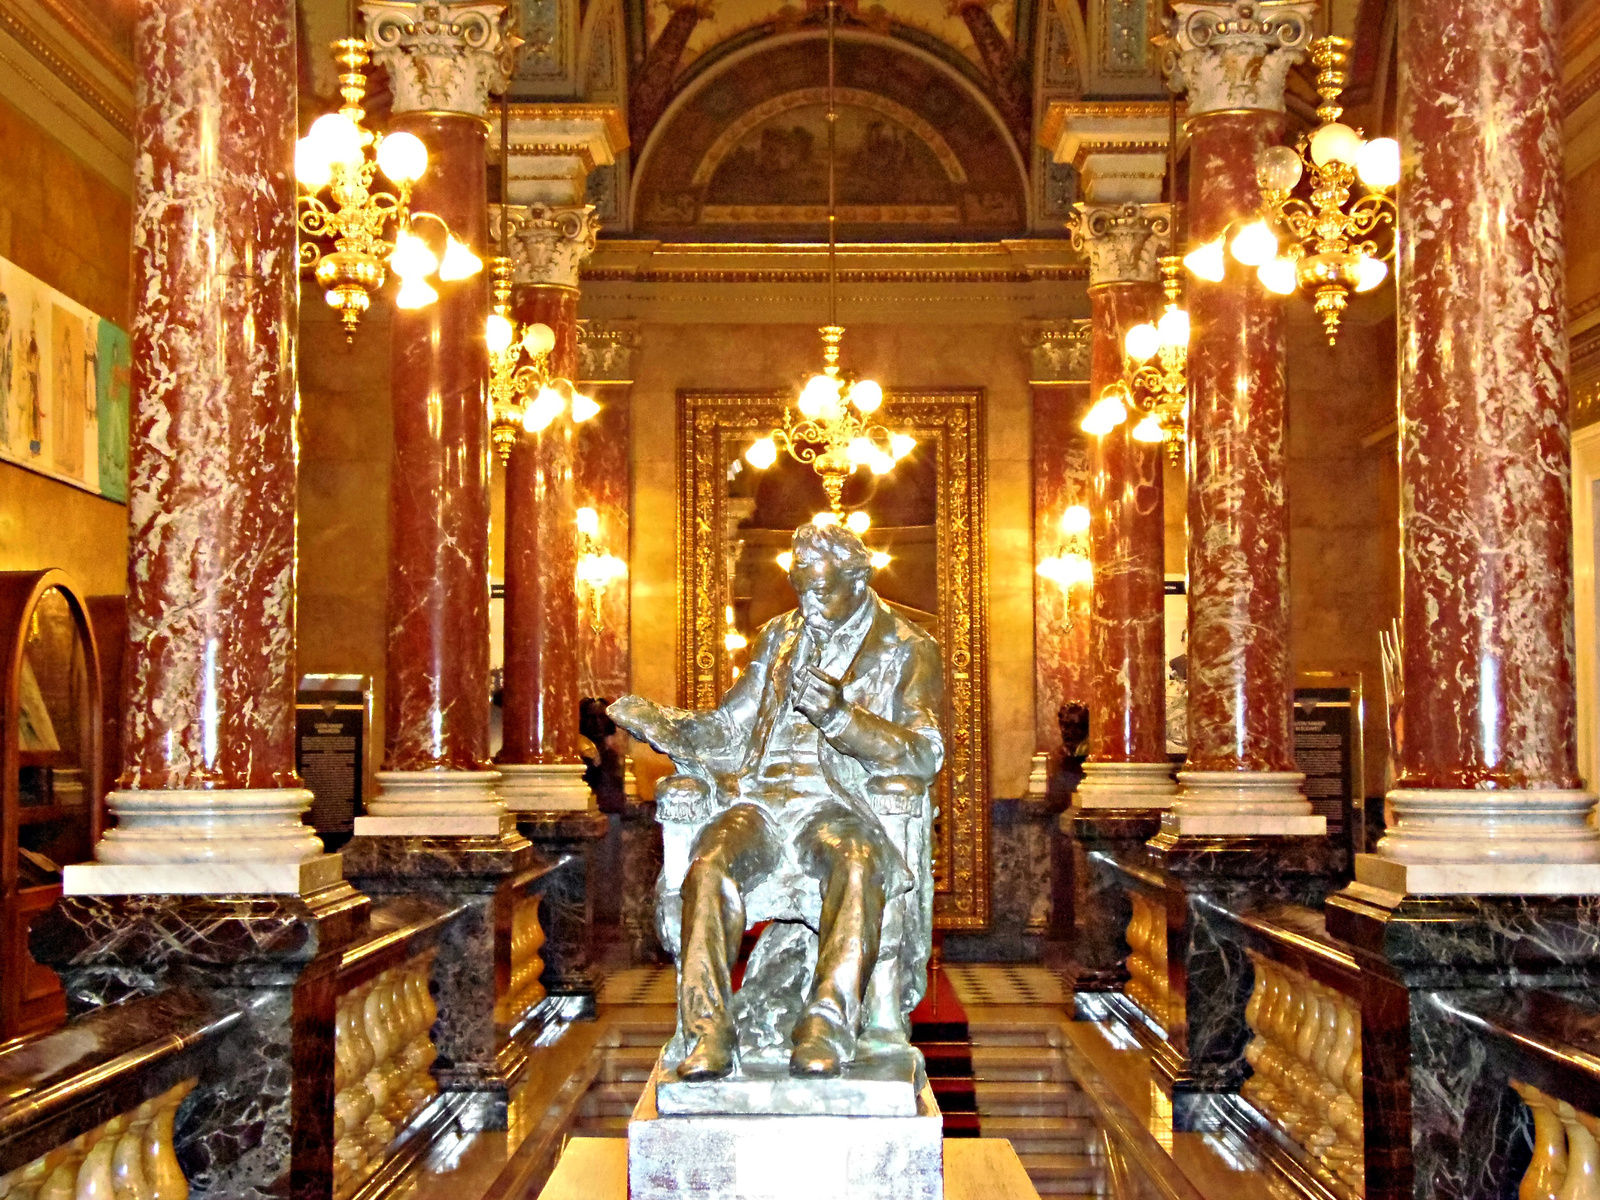 Operaház Királyi lépcső, az előtérbe Ybl Miklós szobra